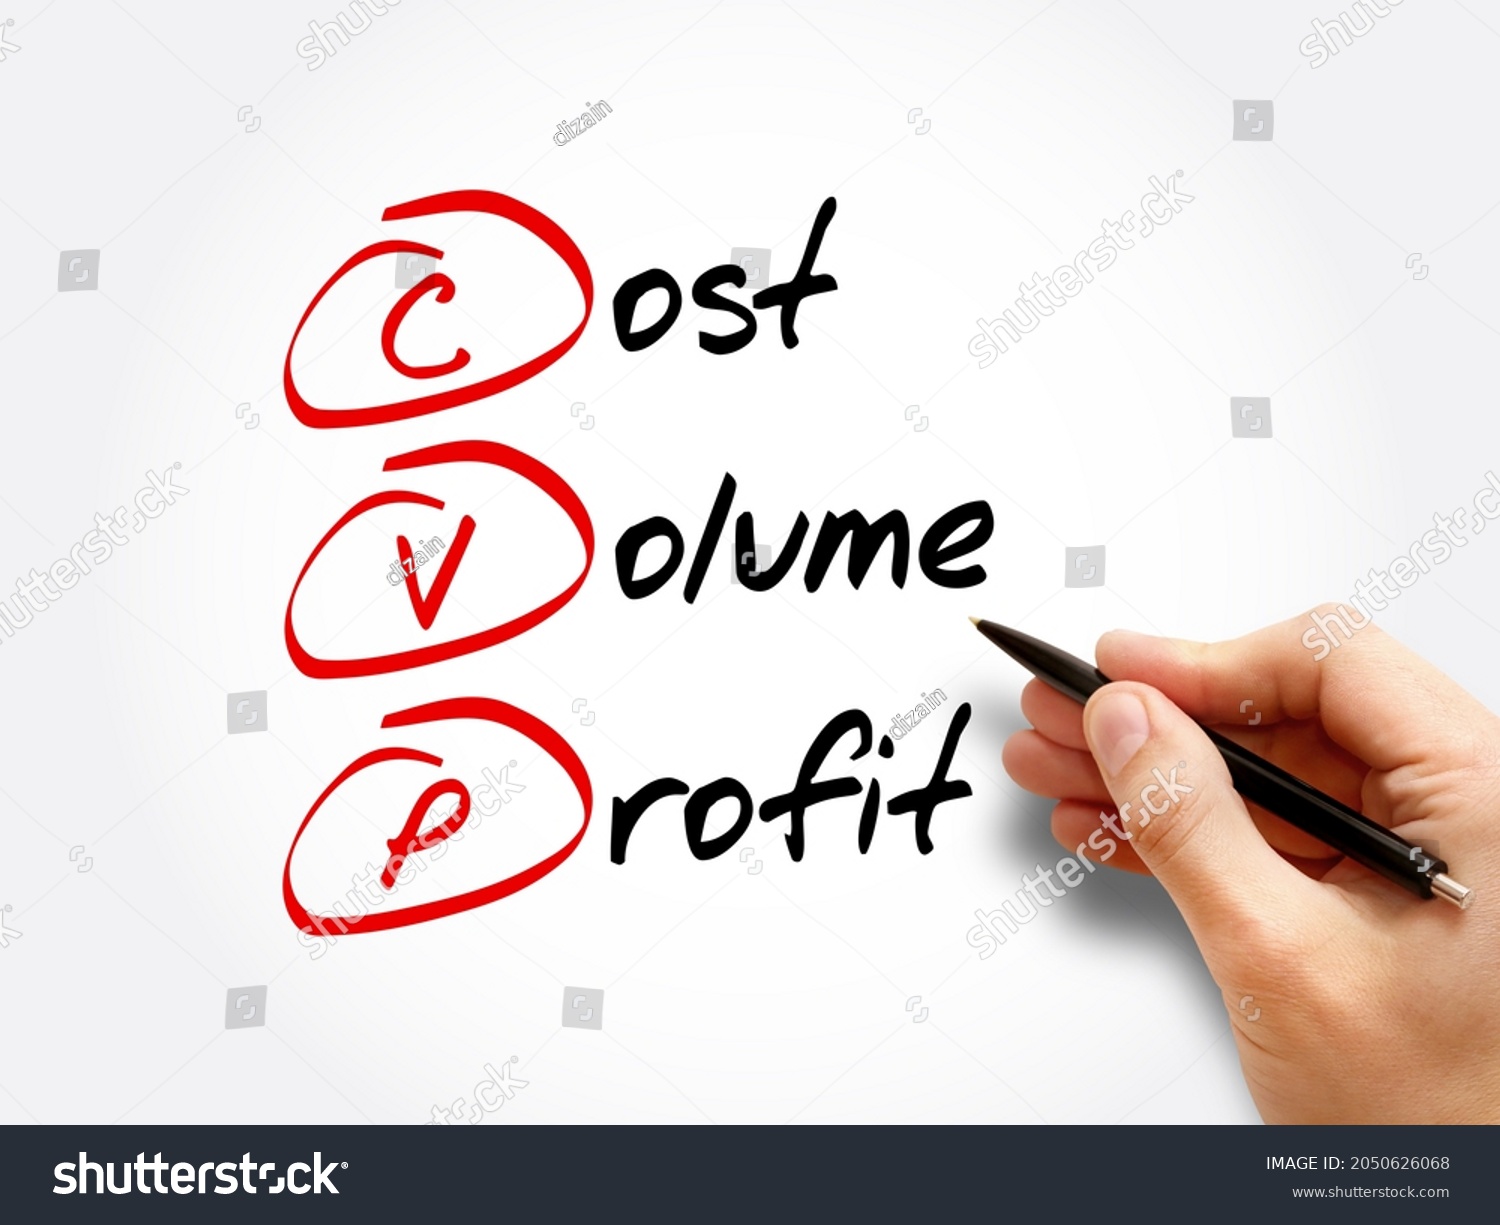 CVP – Cost Volume Profit acronym, business concept background #2050626068